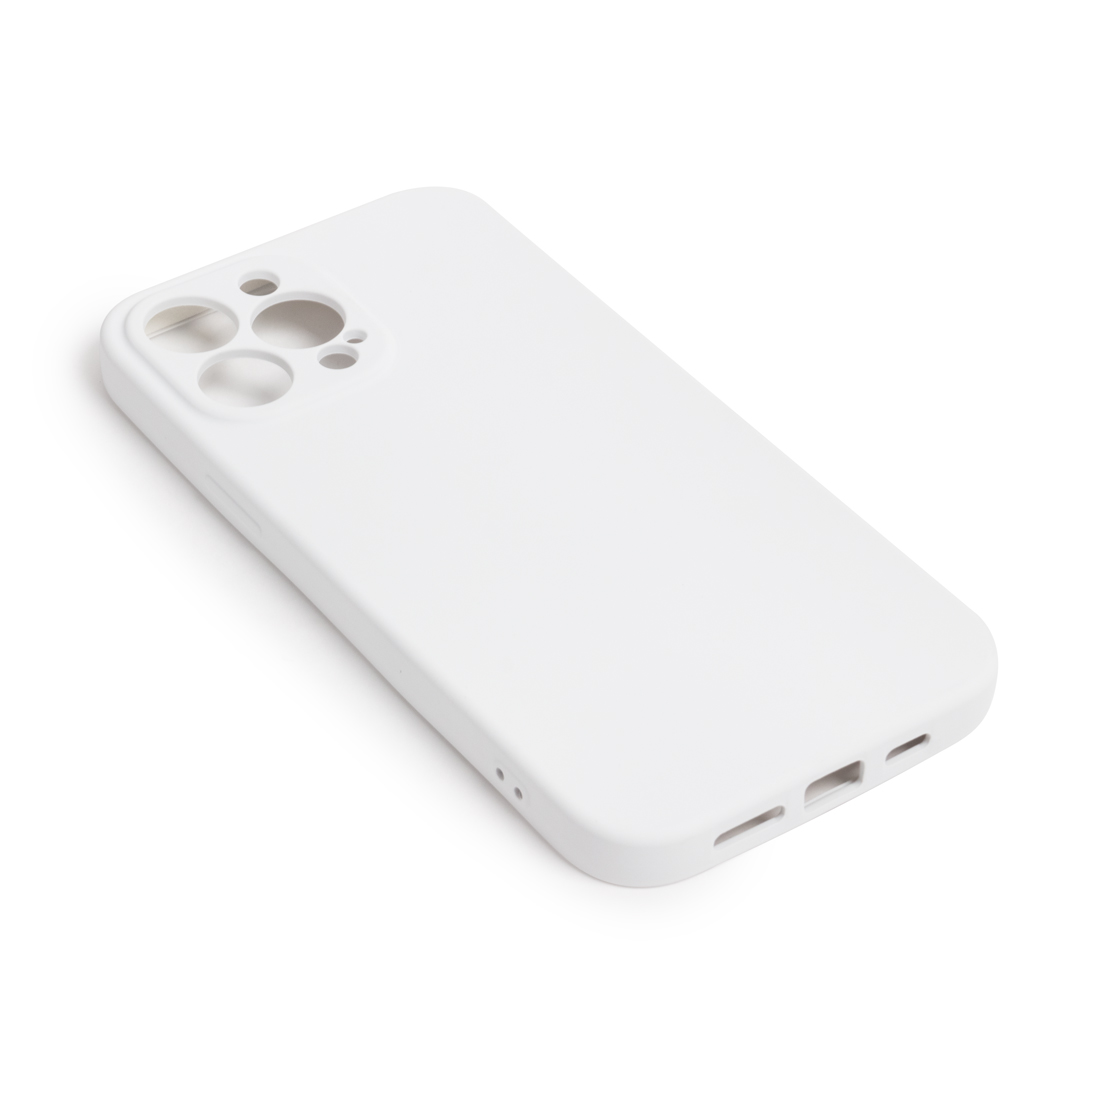 картинка Чехол для телефона X-Game XG-HS83 для Iphone 13 Pro Max Силиконовый Белый от магазина itmag.kz